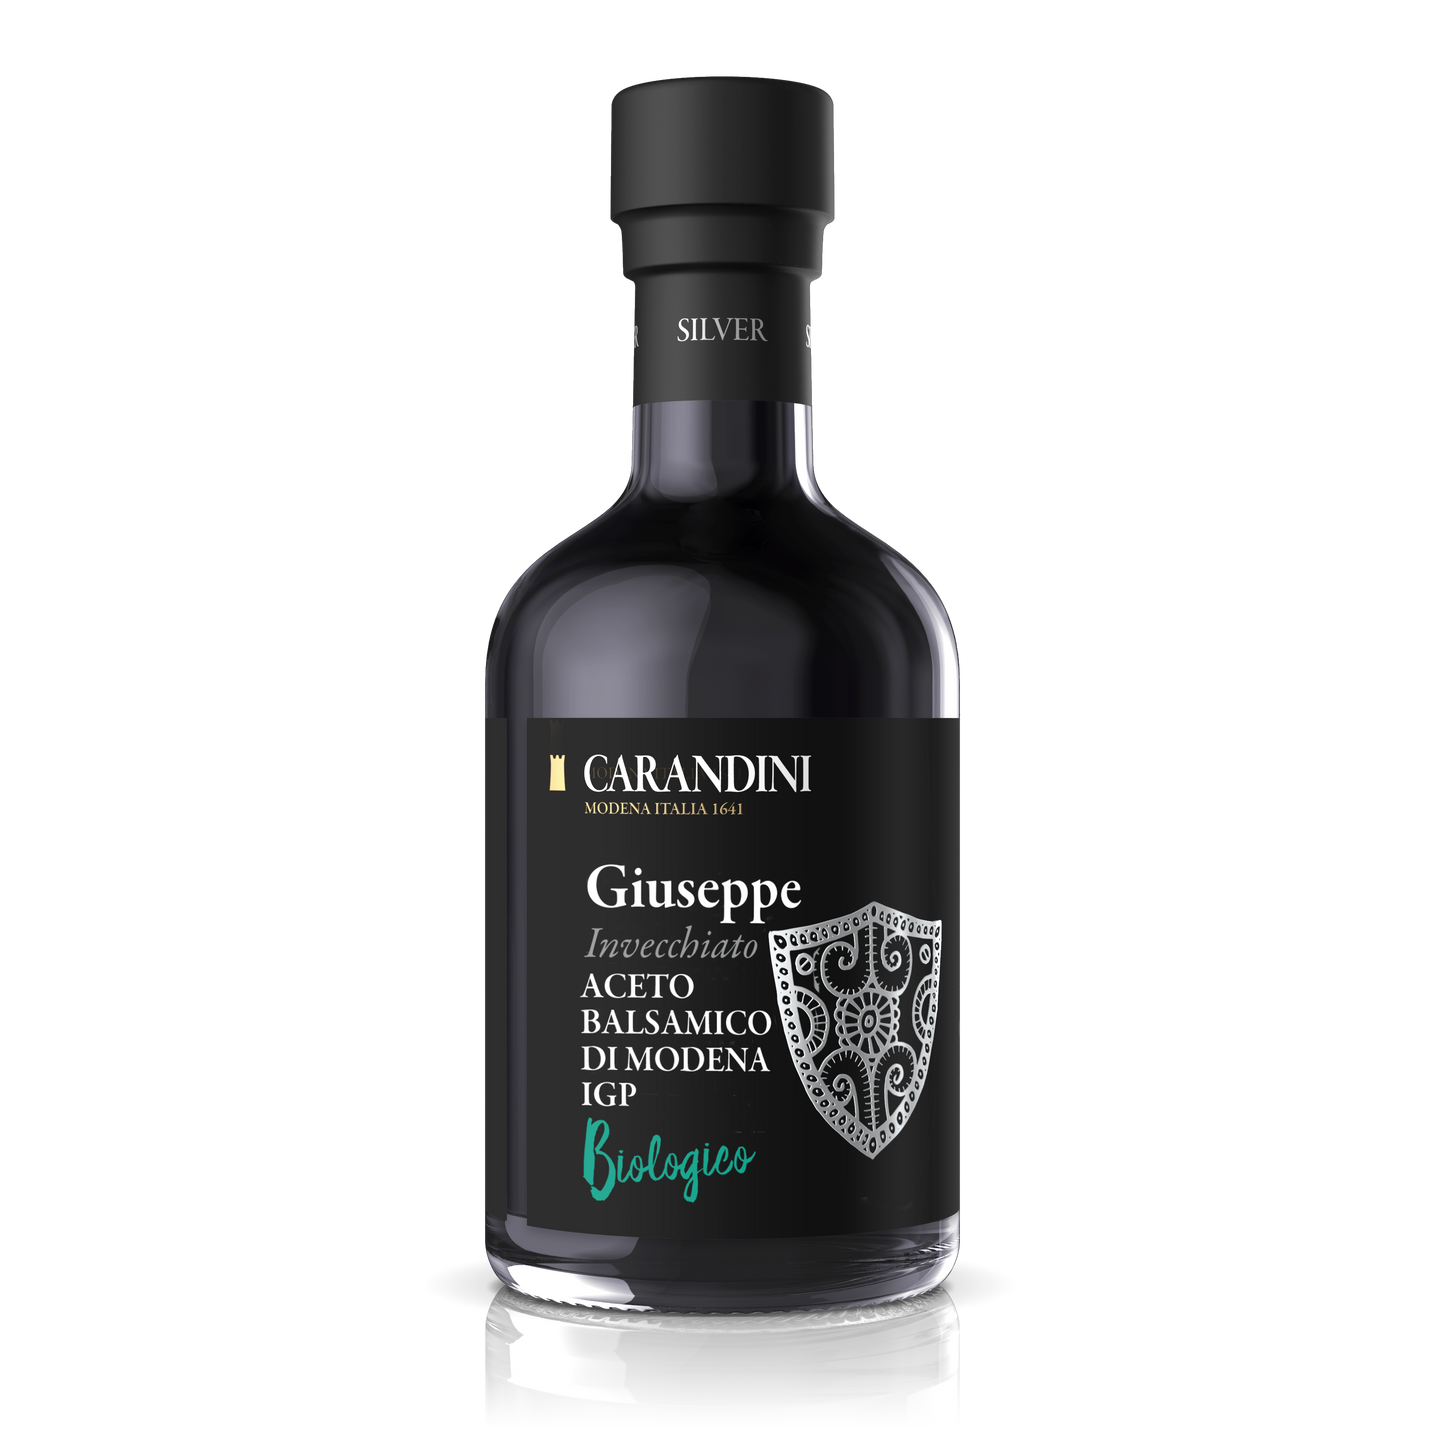 Giuseppe Organic Aged Balsamic Vinegar of Modena PGI